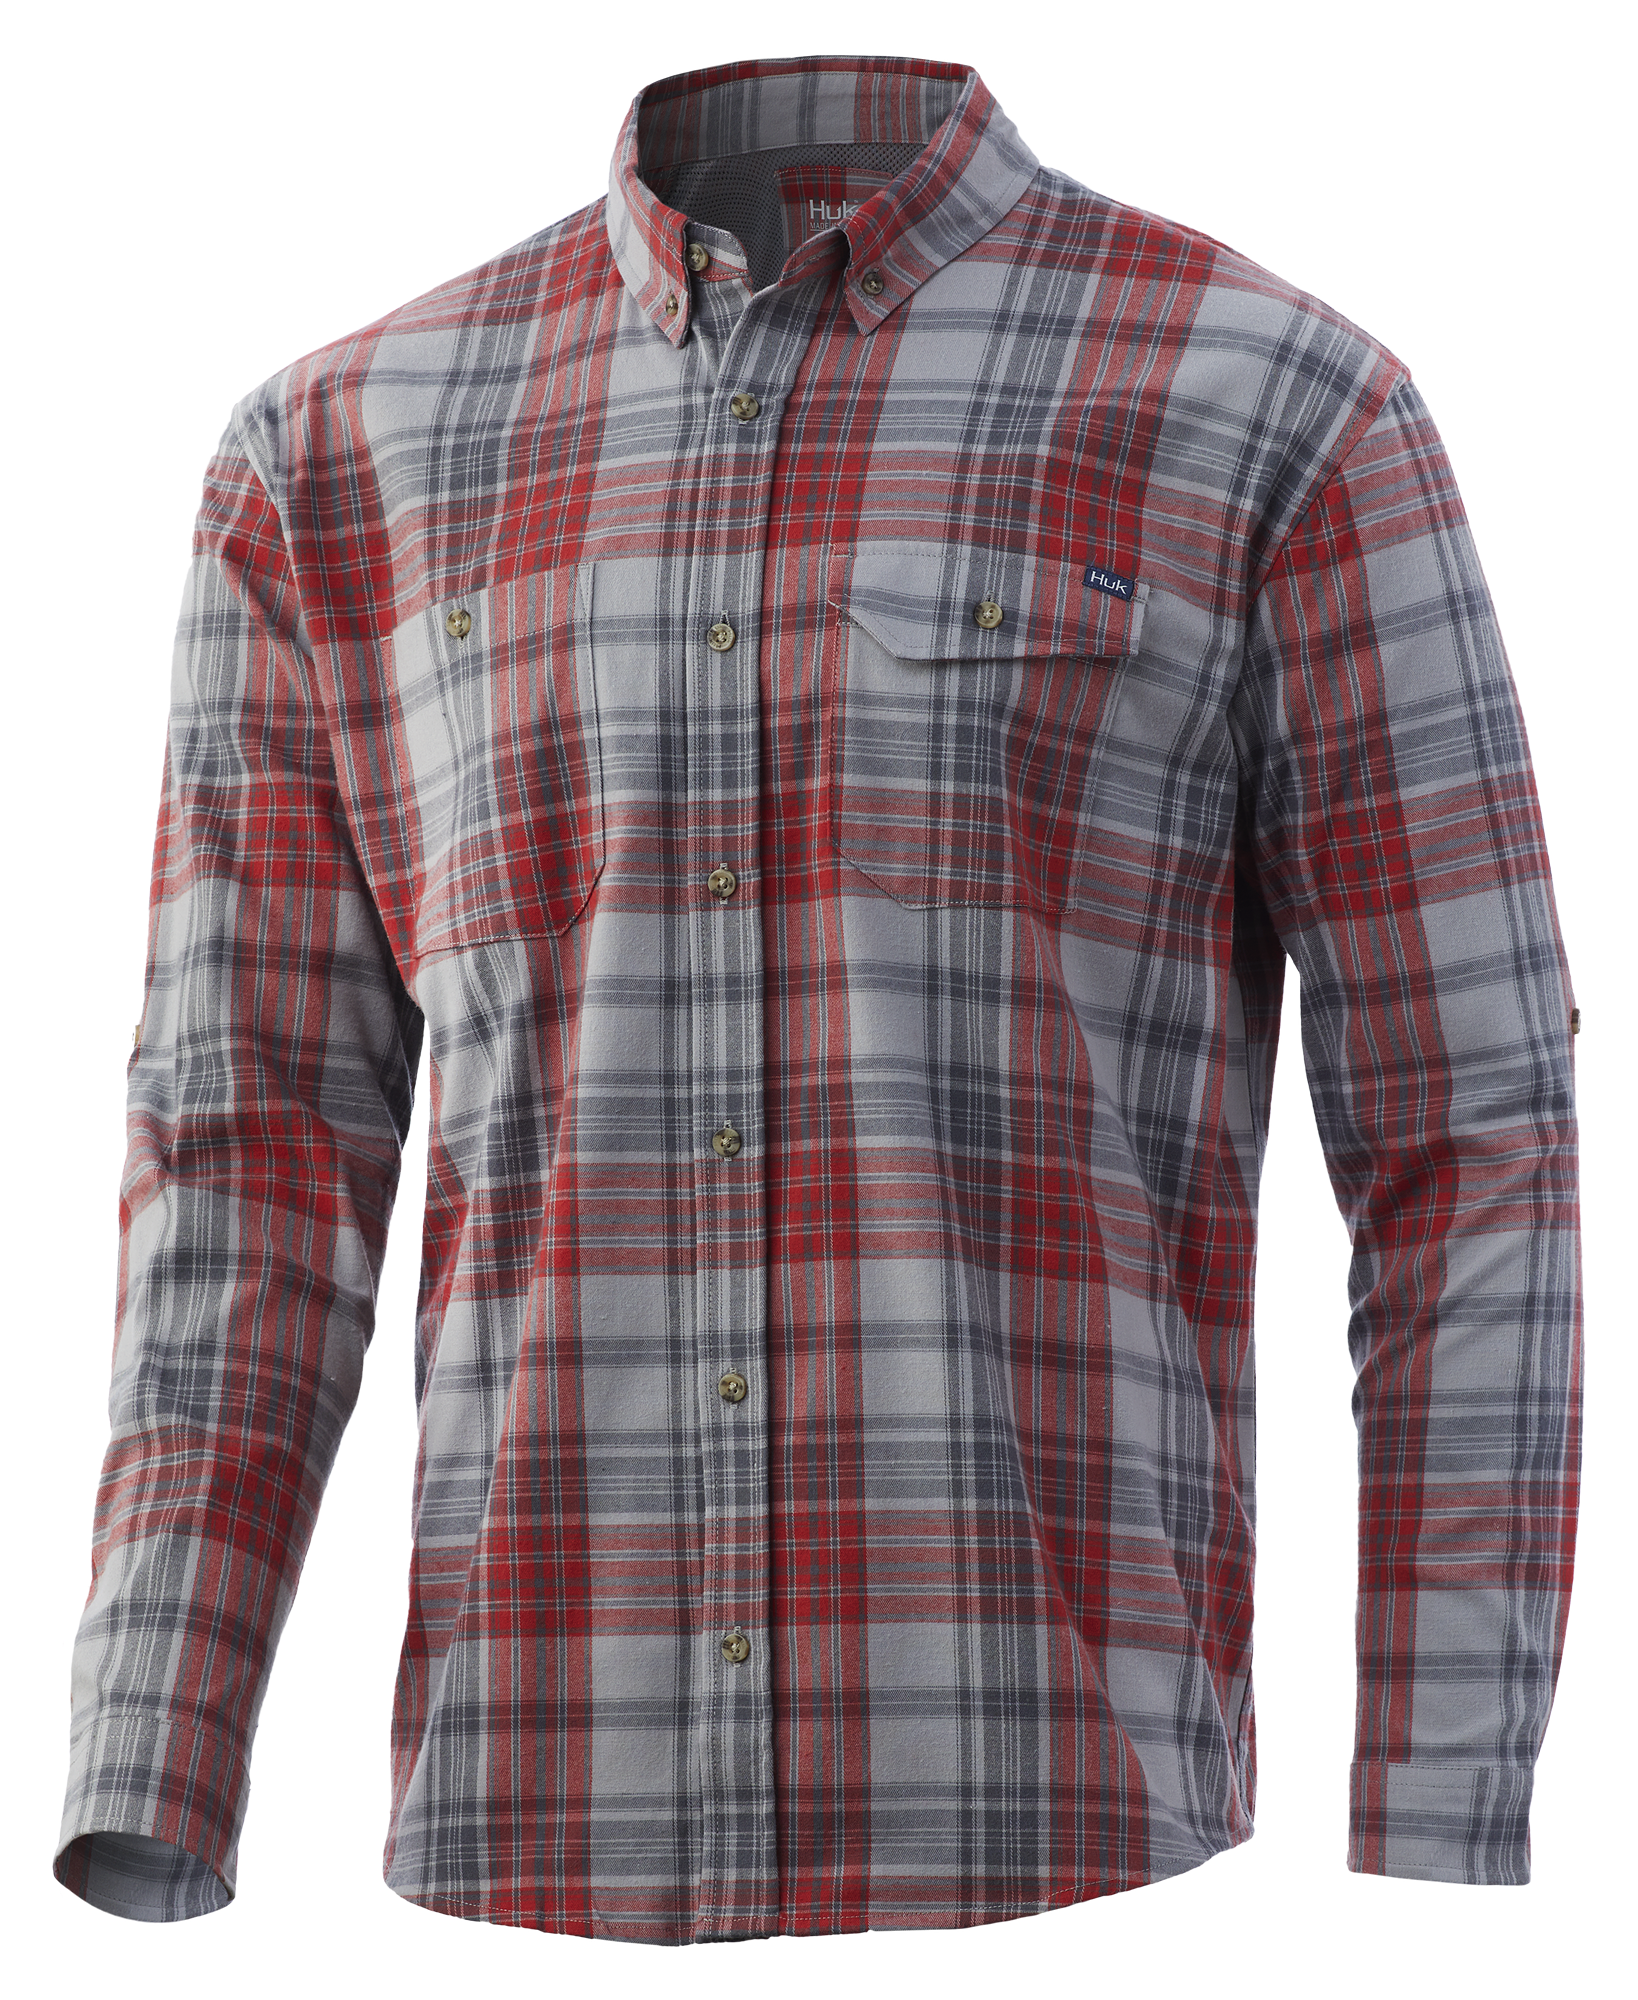 Huk Rutledge Flannel Long-Sleeve Shirt for Men